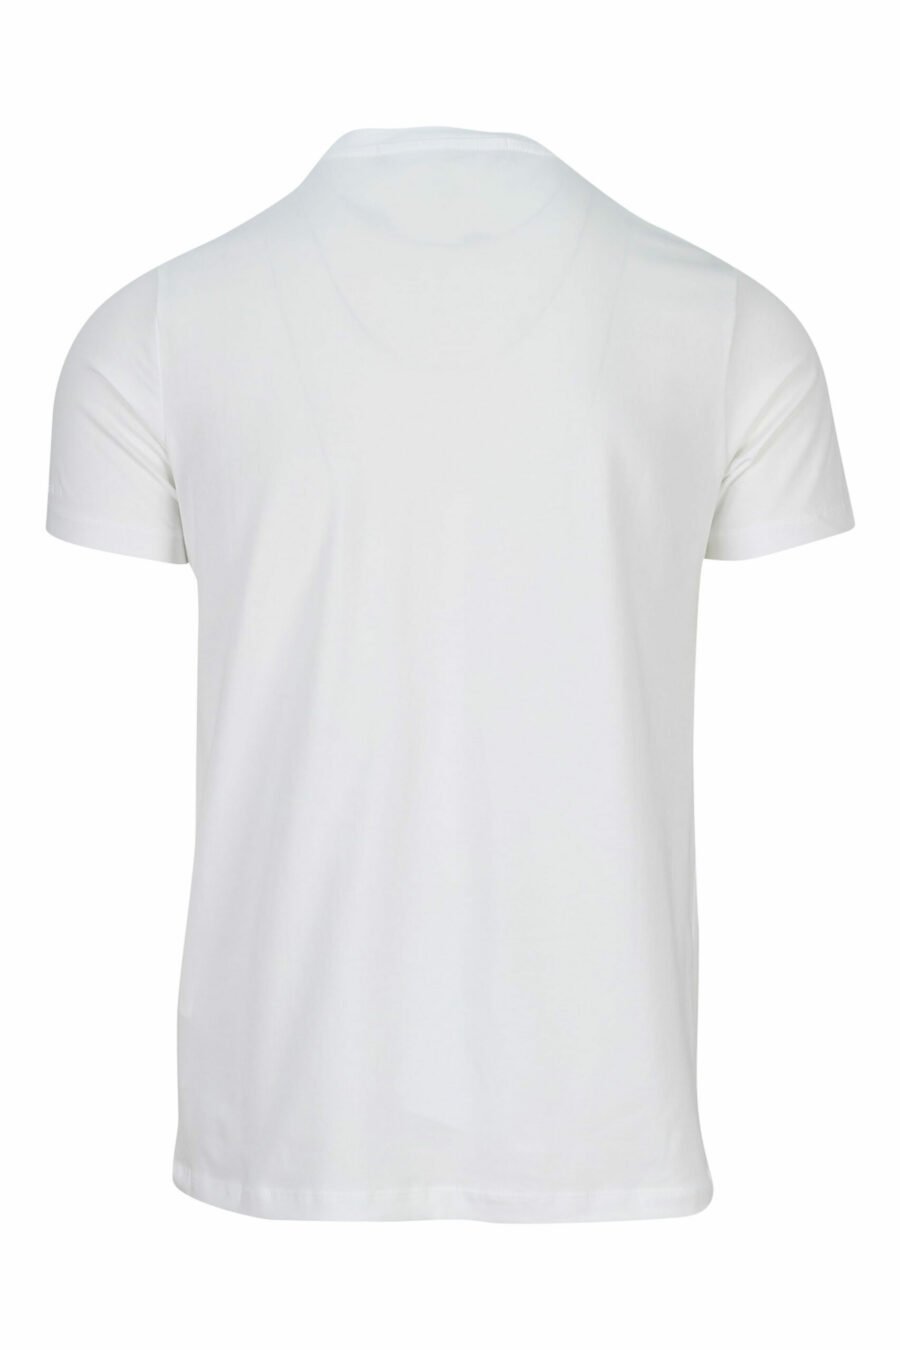 Camiseta blanca con maxilogo monocromático de goma - 4062226401180 1 scaled